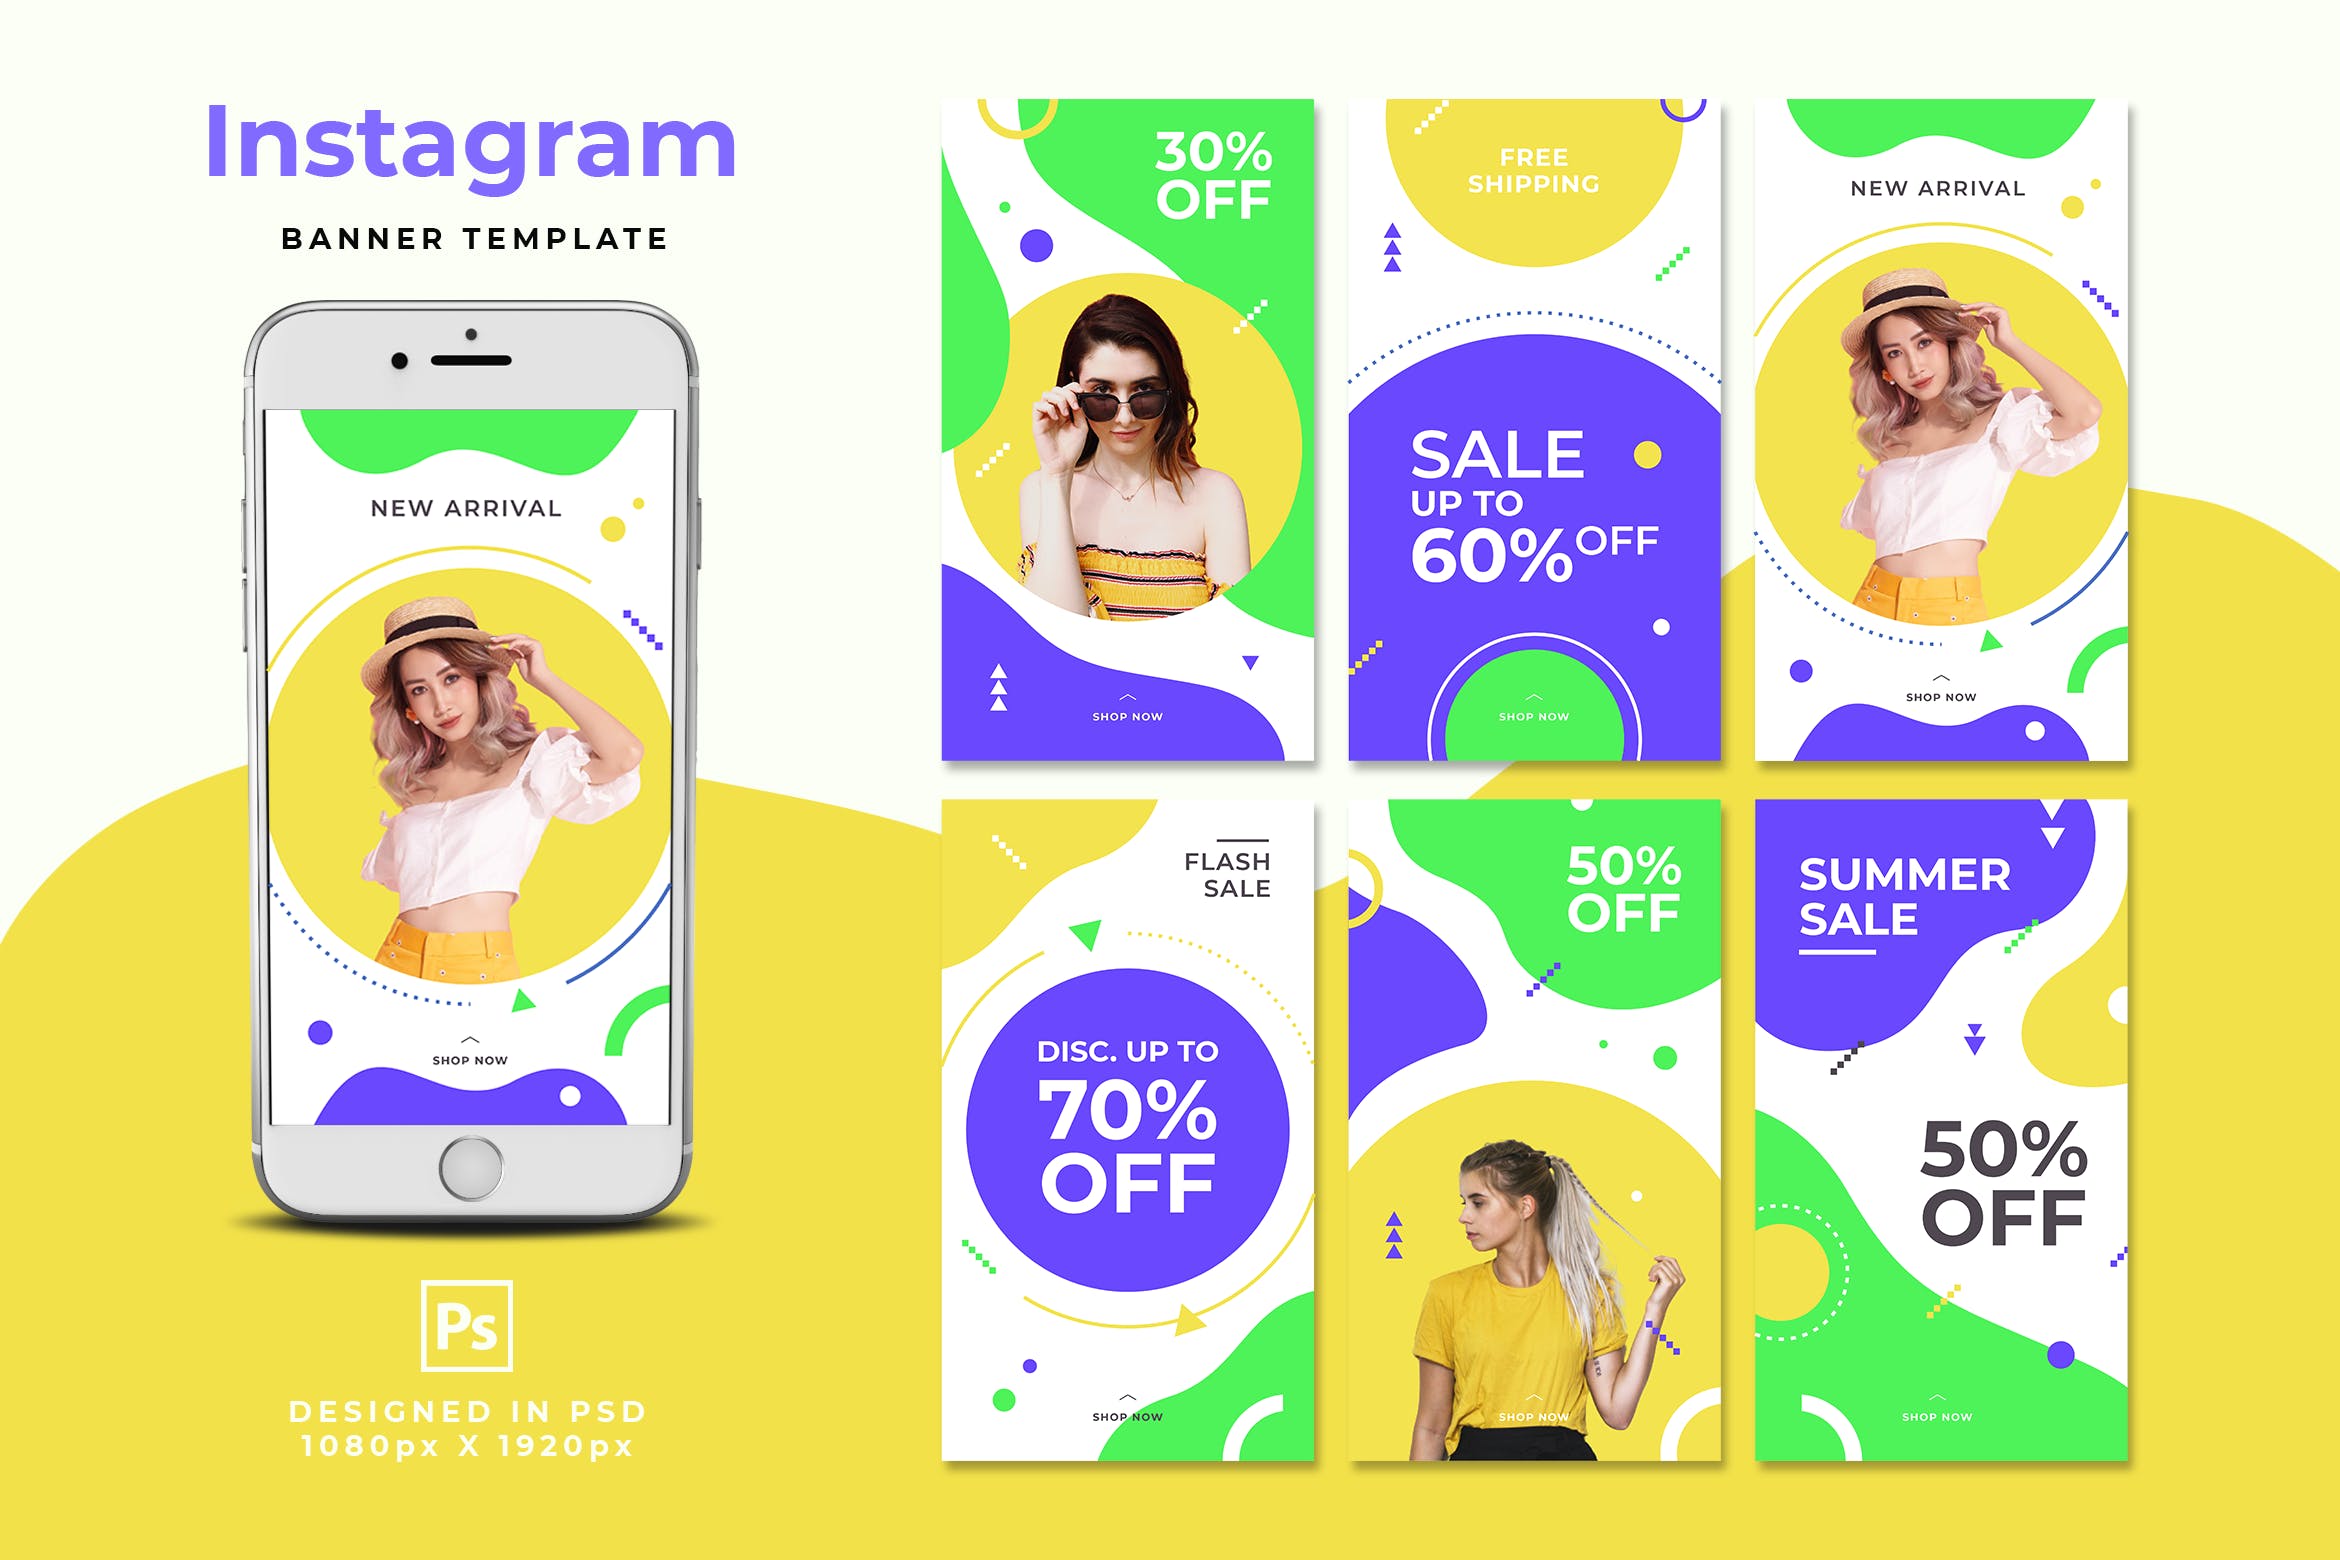 促销推广夏季服装Instagram故事社交素材 Summer Sale Instagram Stories设计素材模板